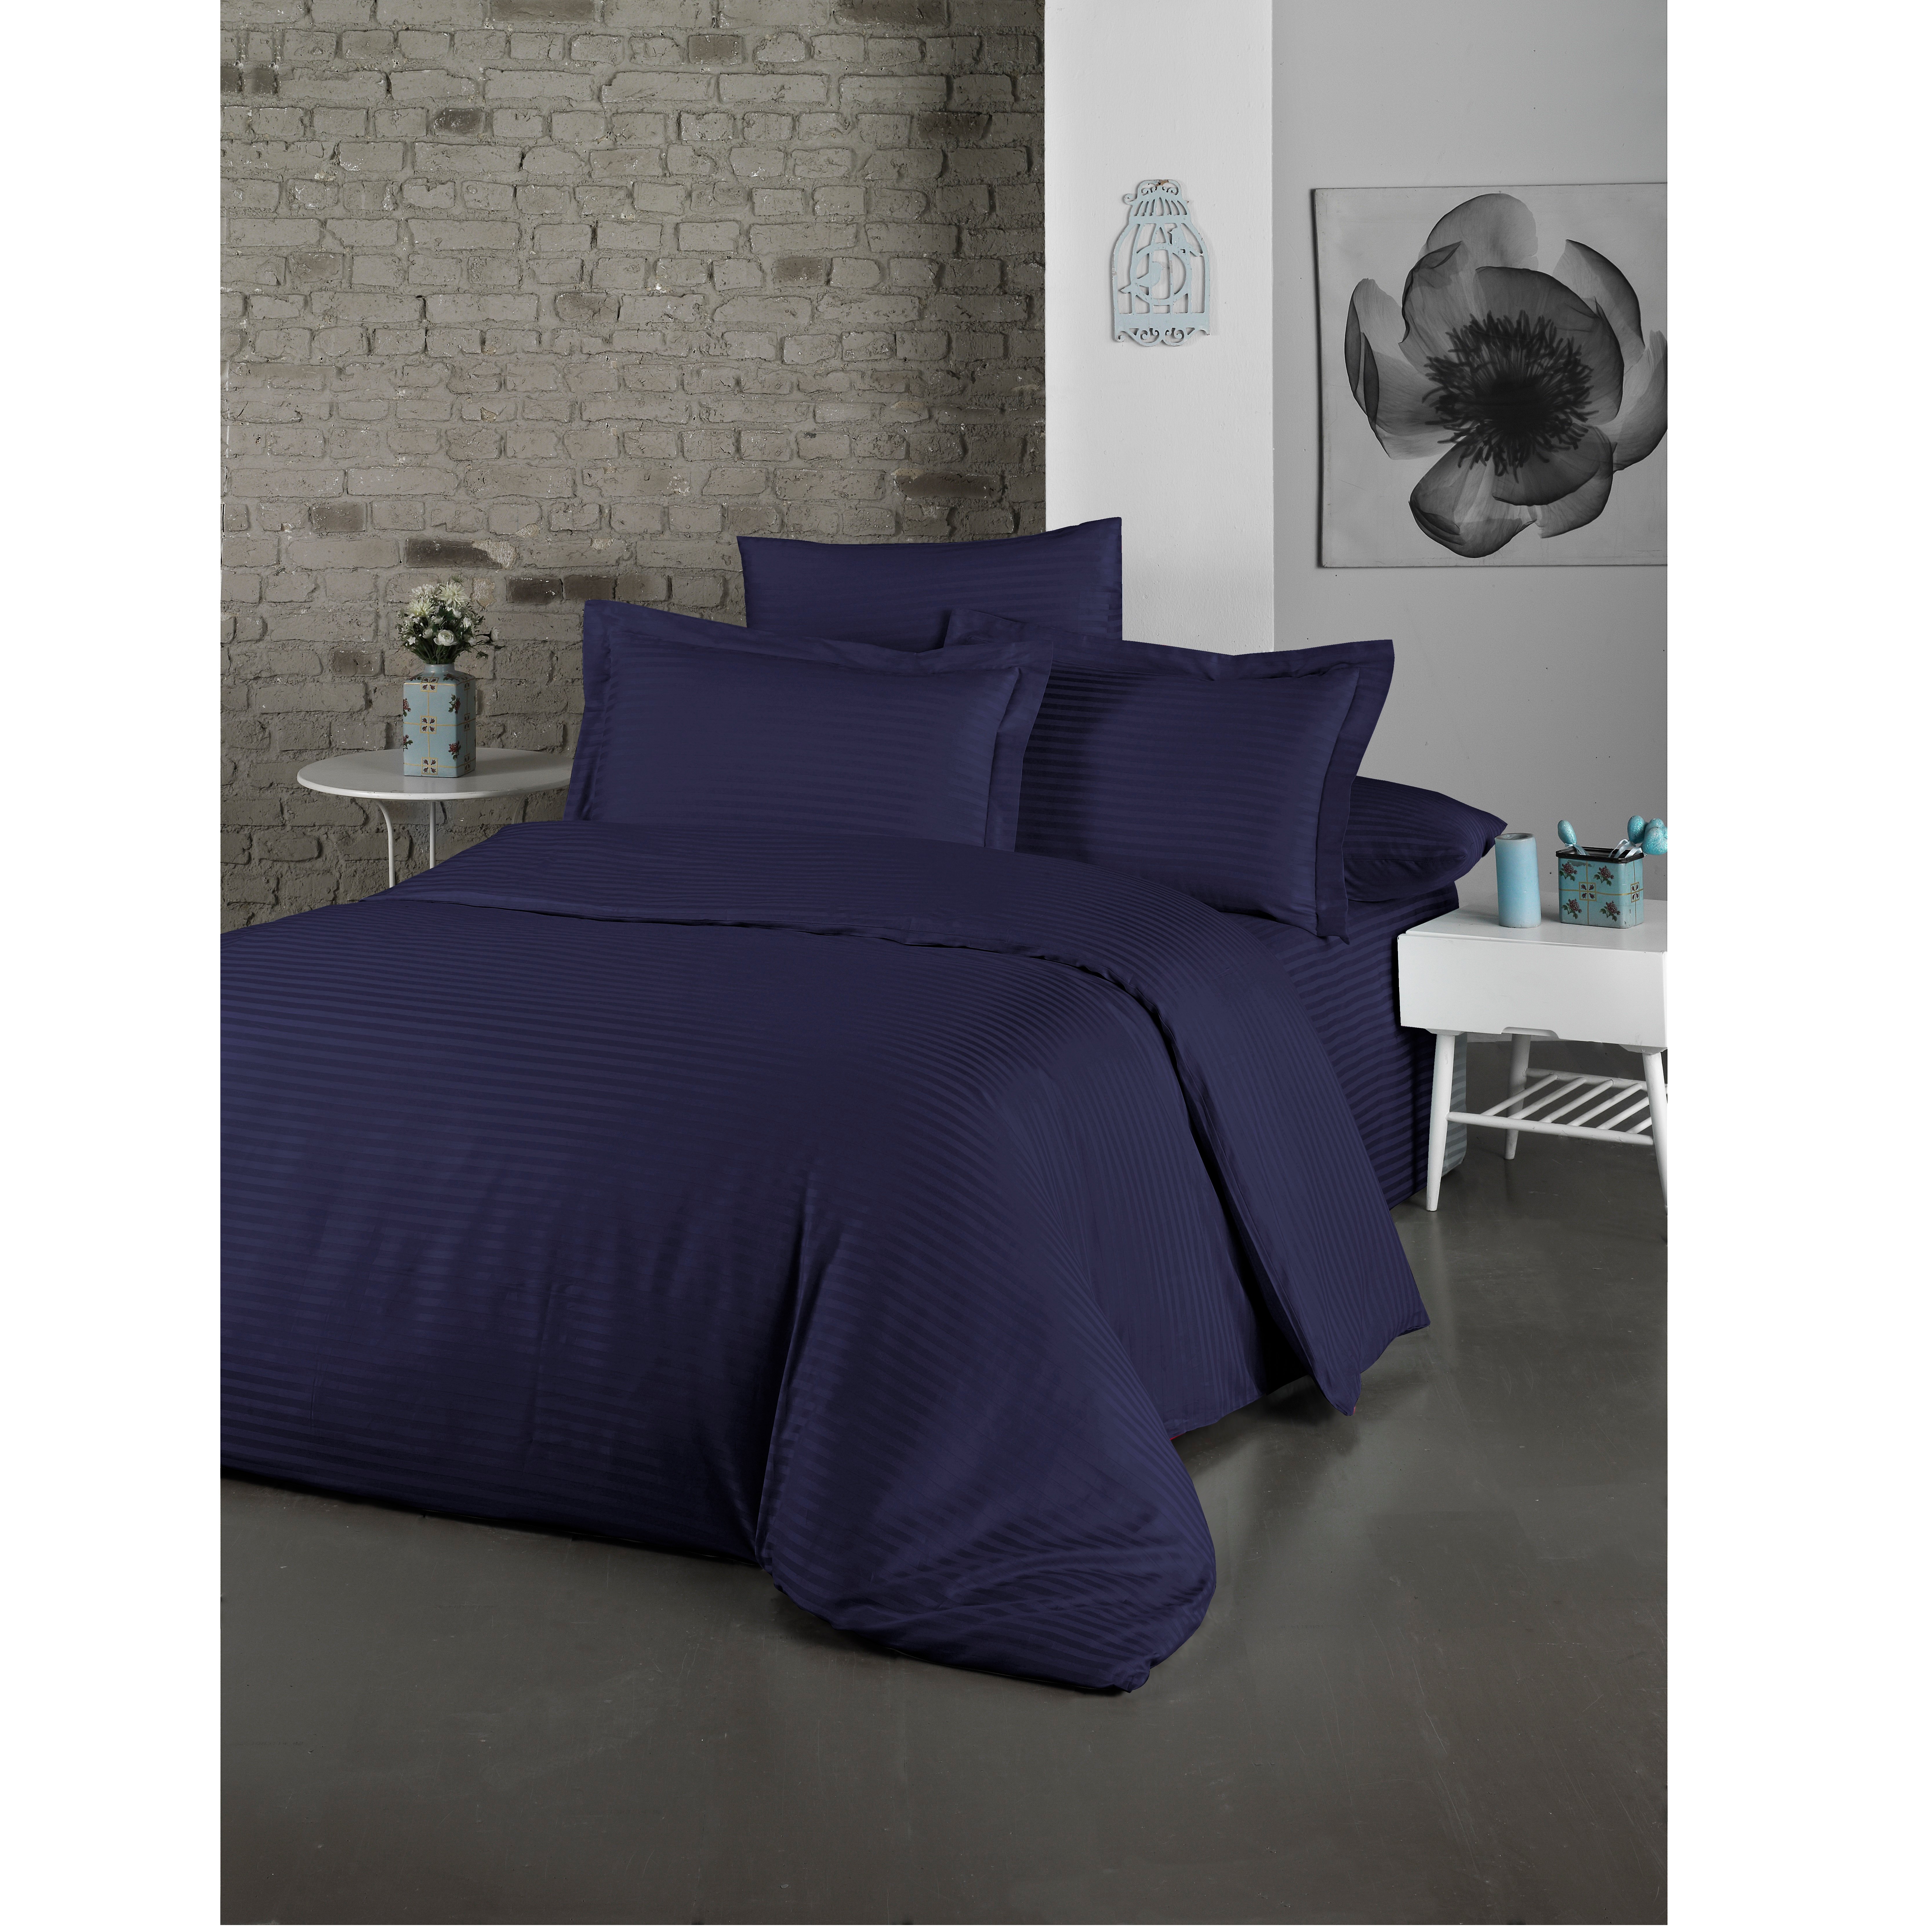 Комплект постельного белья LightHouse Exclusive Sateen Stripe Lux, сатин, евростандарт, 220x200 см, синий (2200000550200) - фото 1